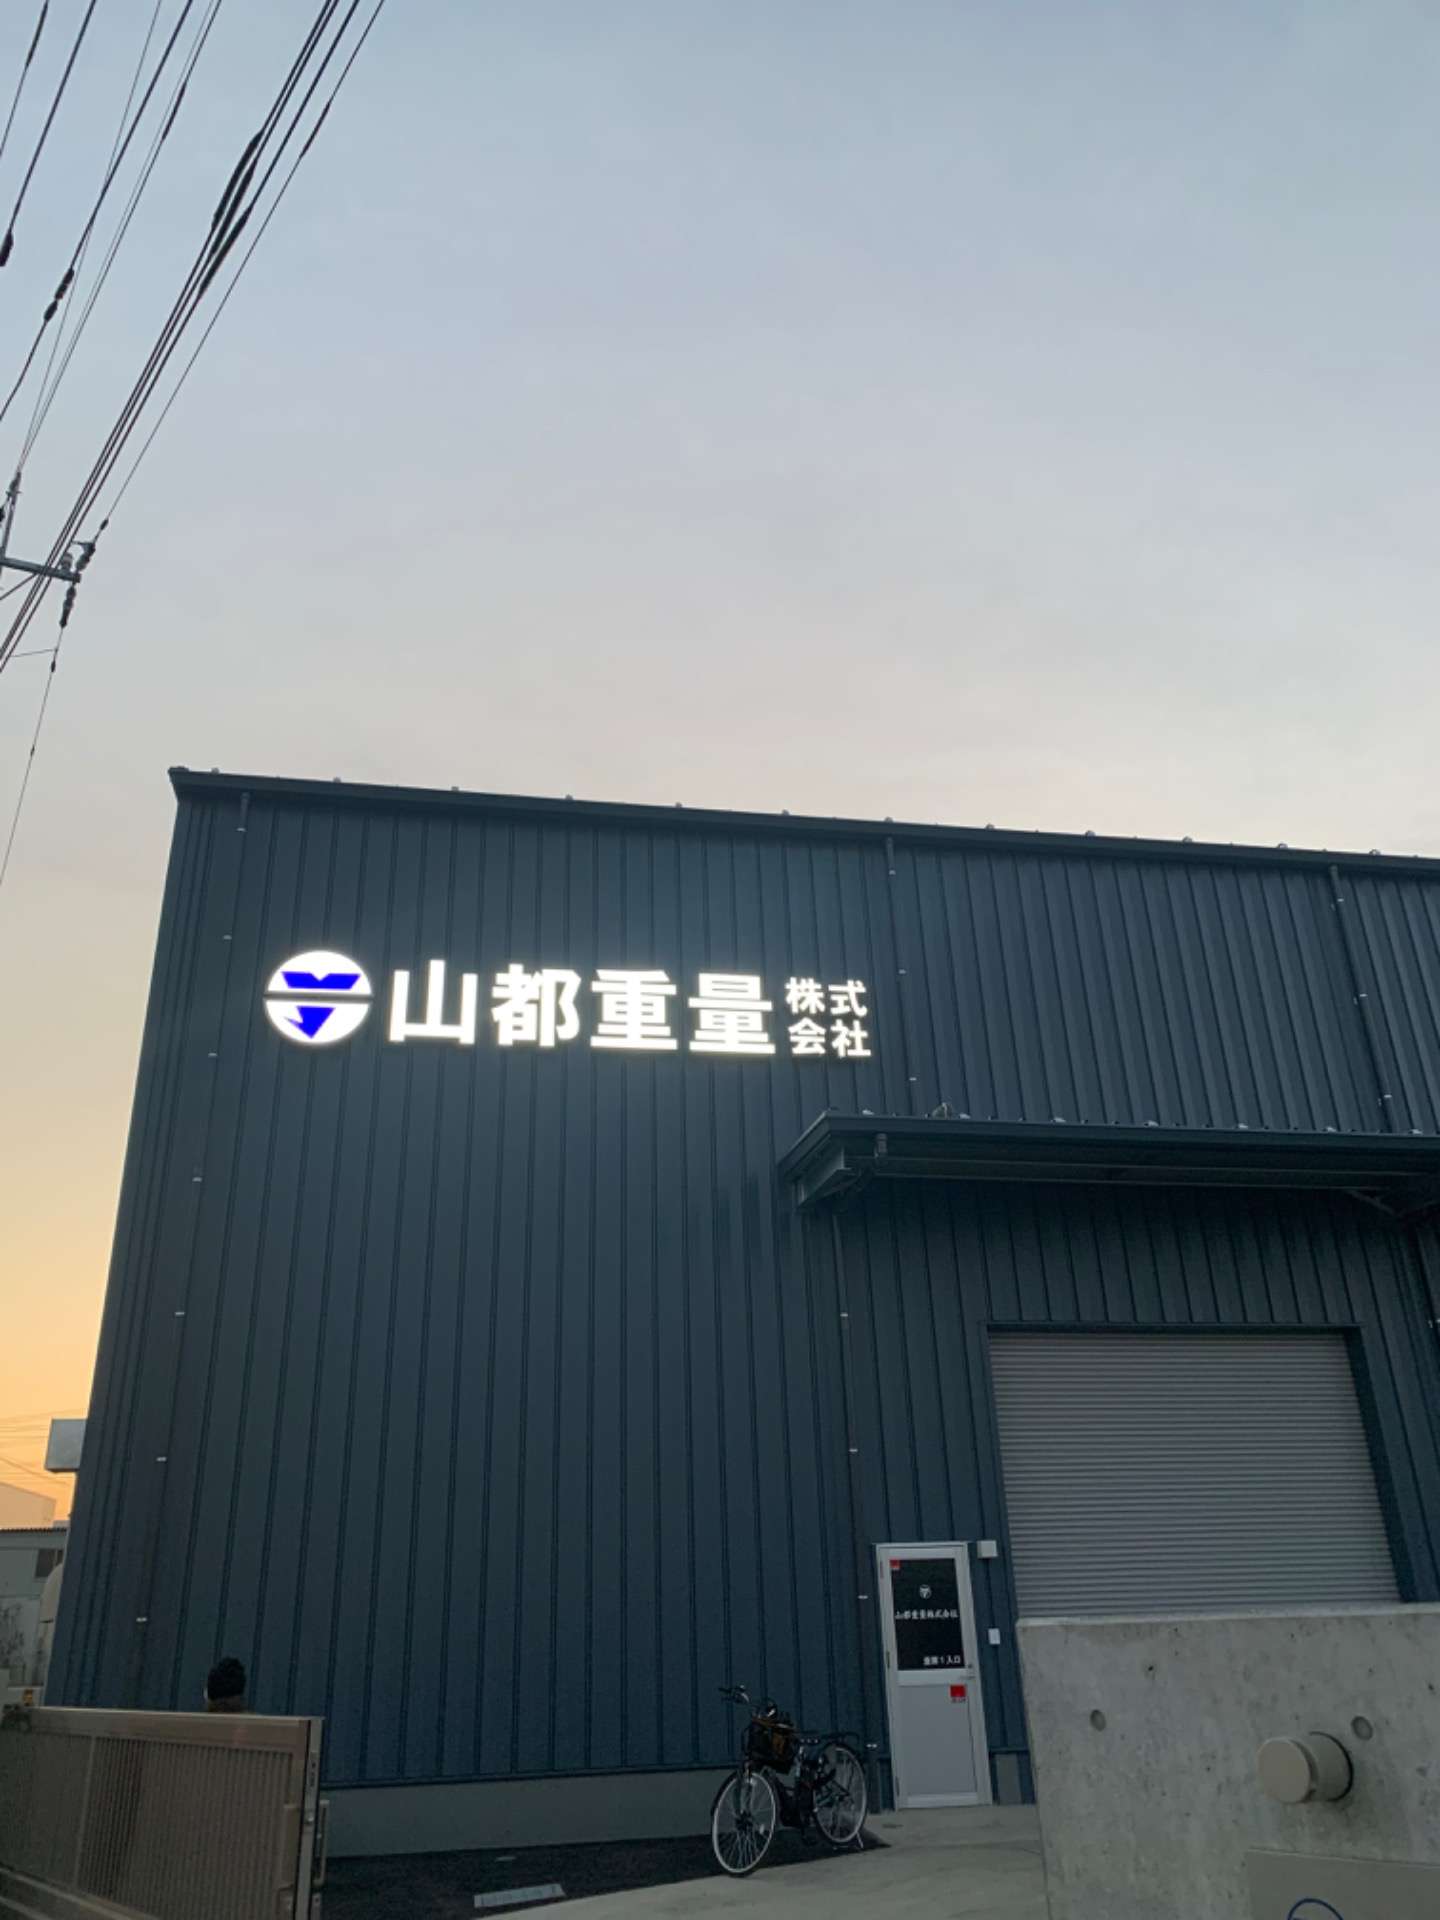 埼玉県新座市で機械器具設置工事業の会社を営んでおります。山都重量株式会社です！本日も埼玉県の現場終了しました！